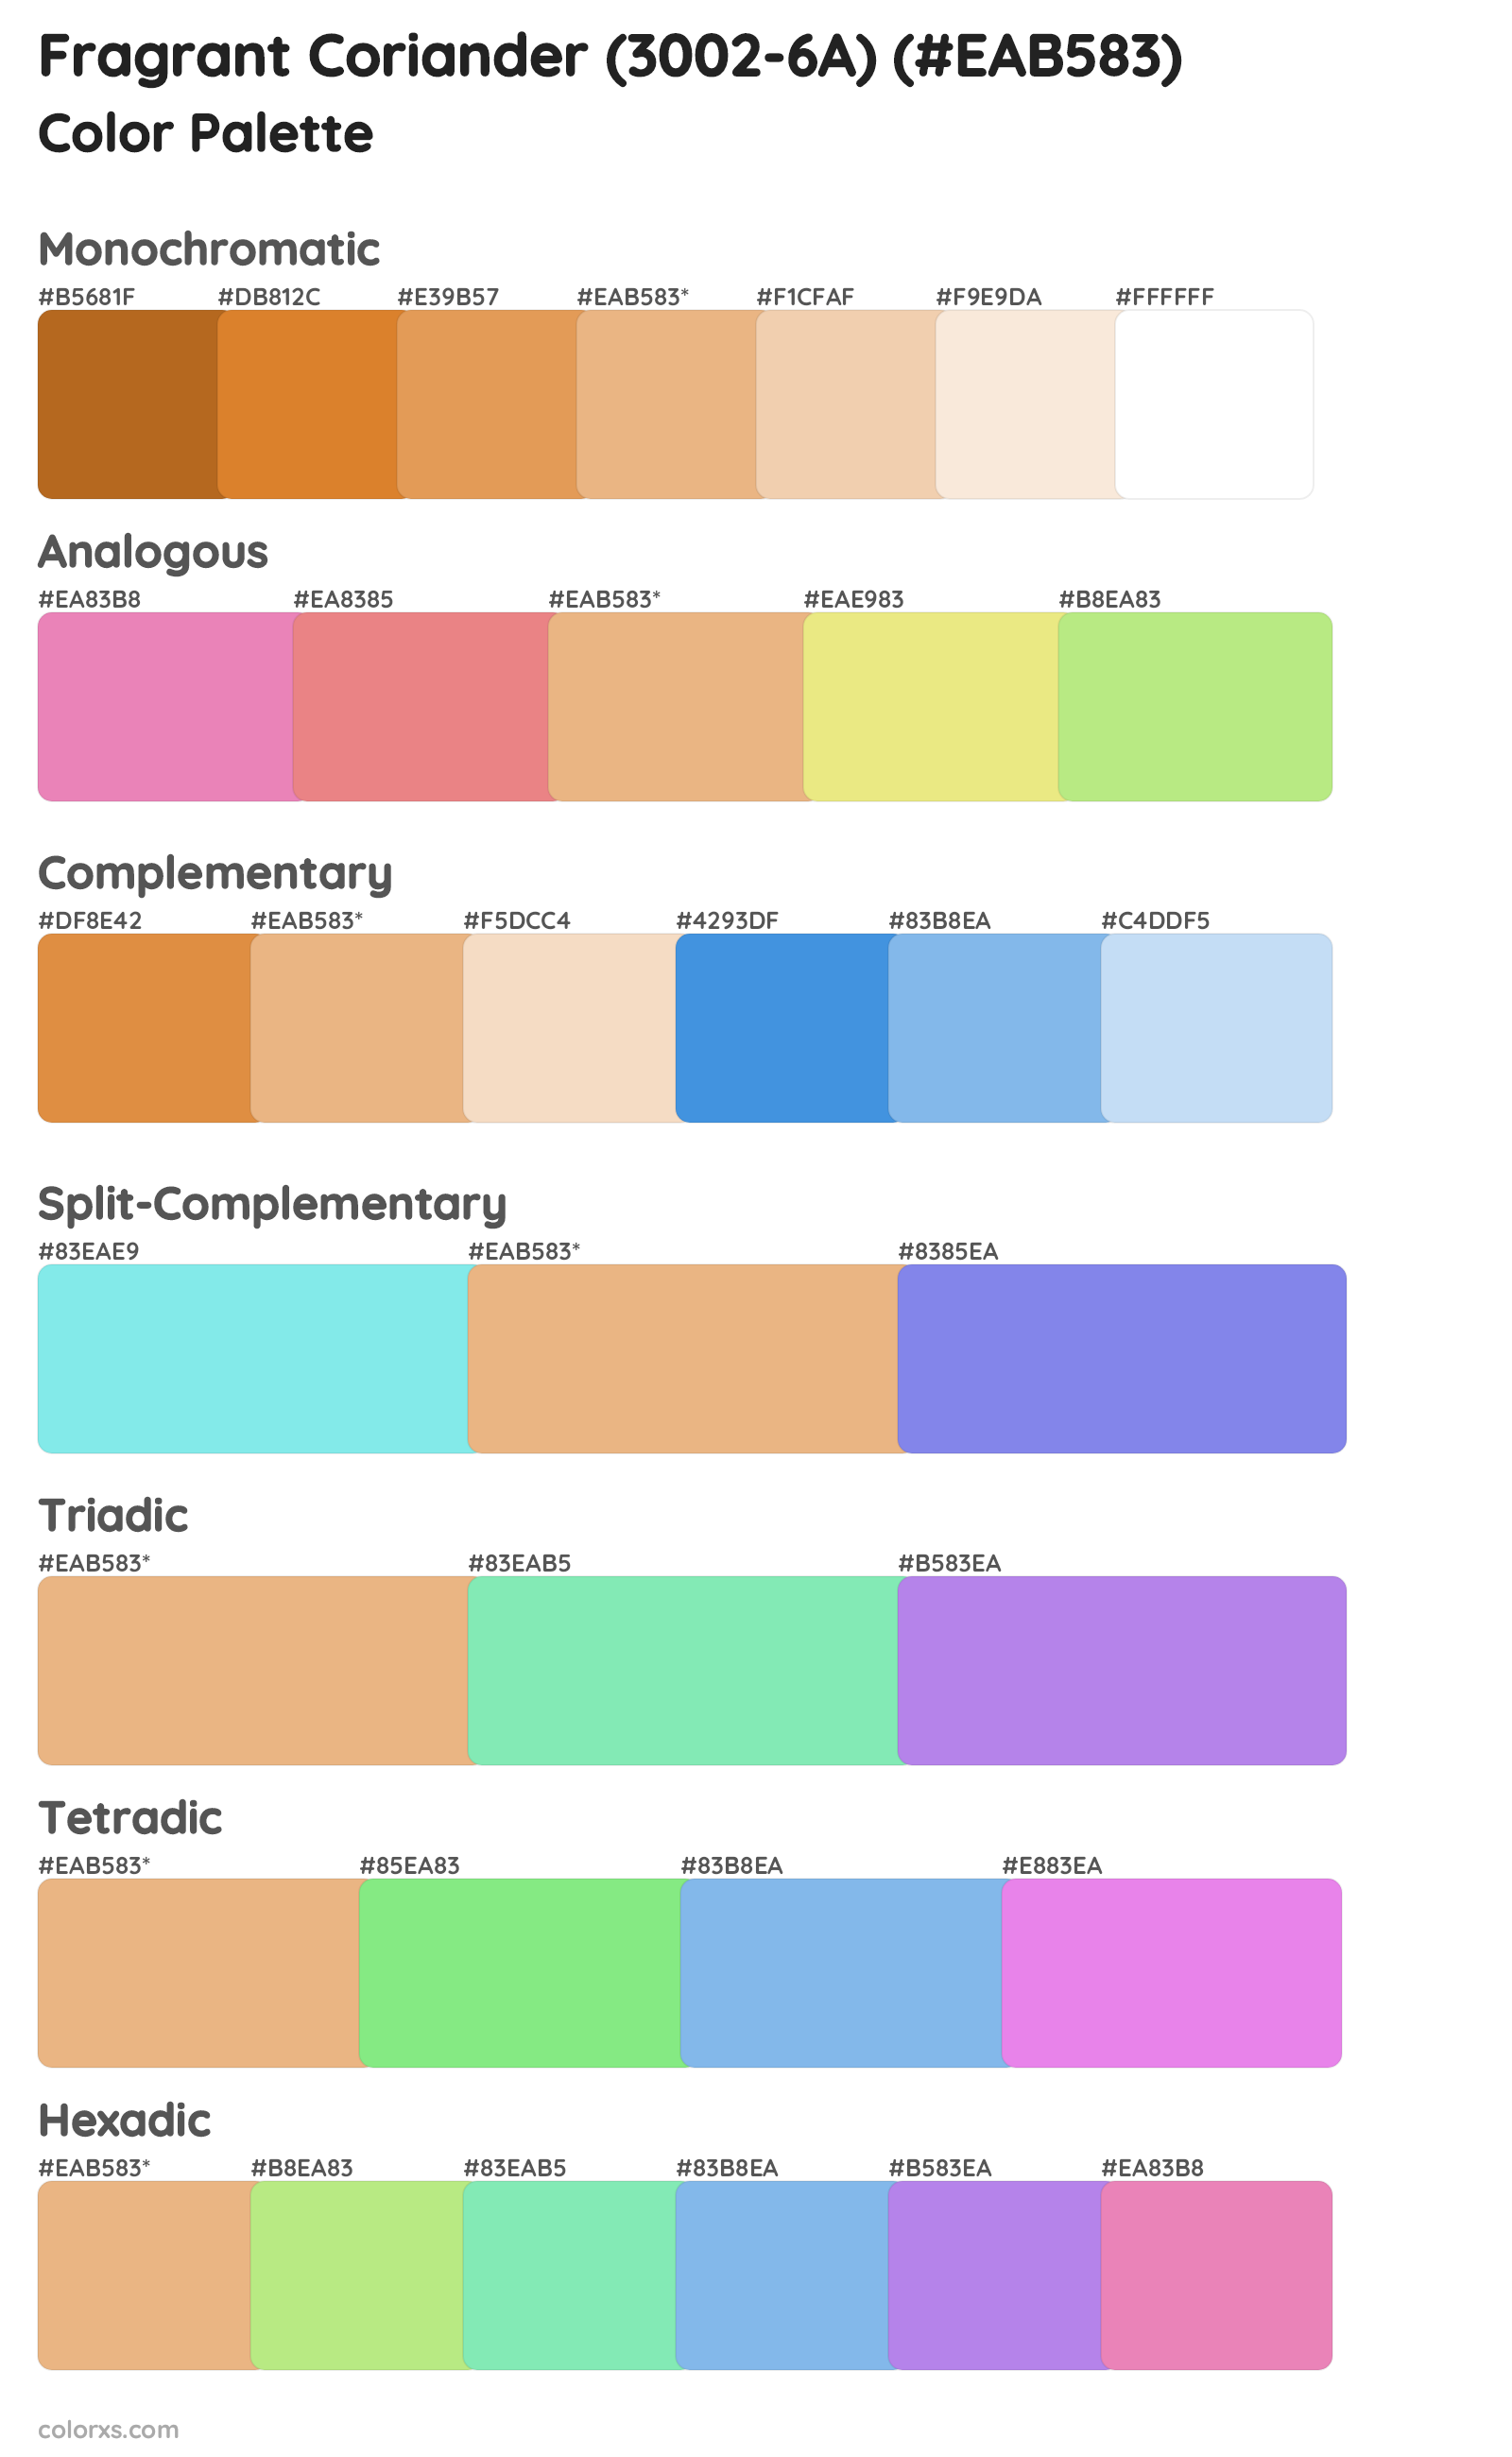 Fragrant Coriander (3002-6A) Color Scheme Palettes